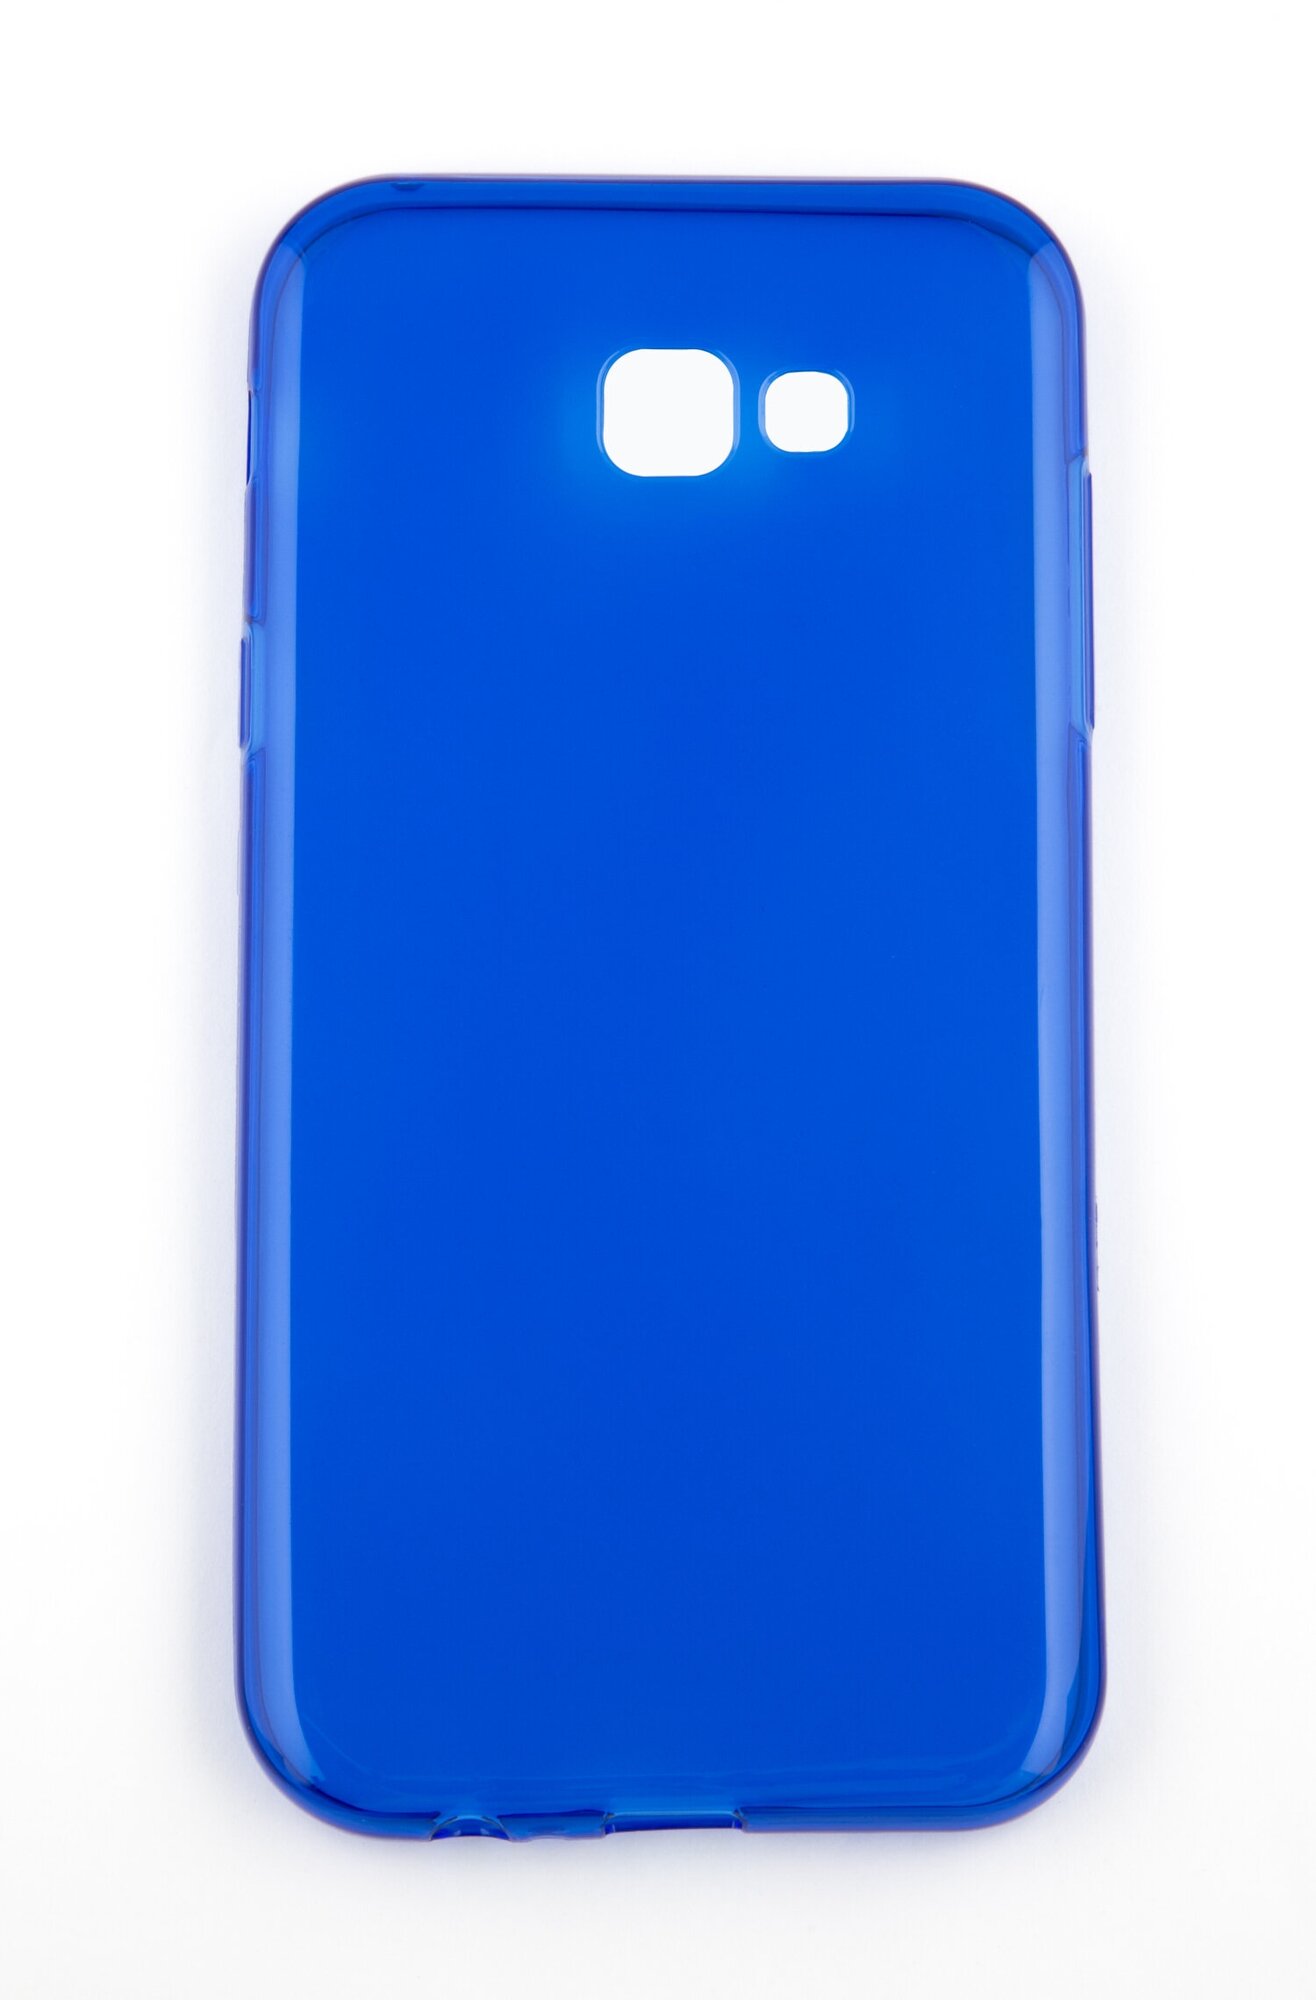 Защитный чехол-бампер на Samsung Galaxy A7 2017/Самсунг Гэлэкси А7 чехол, силикон синий